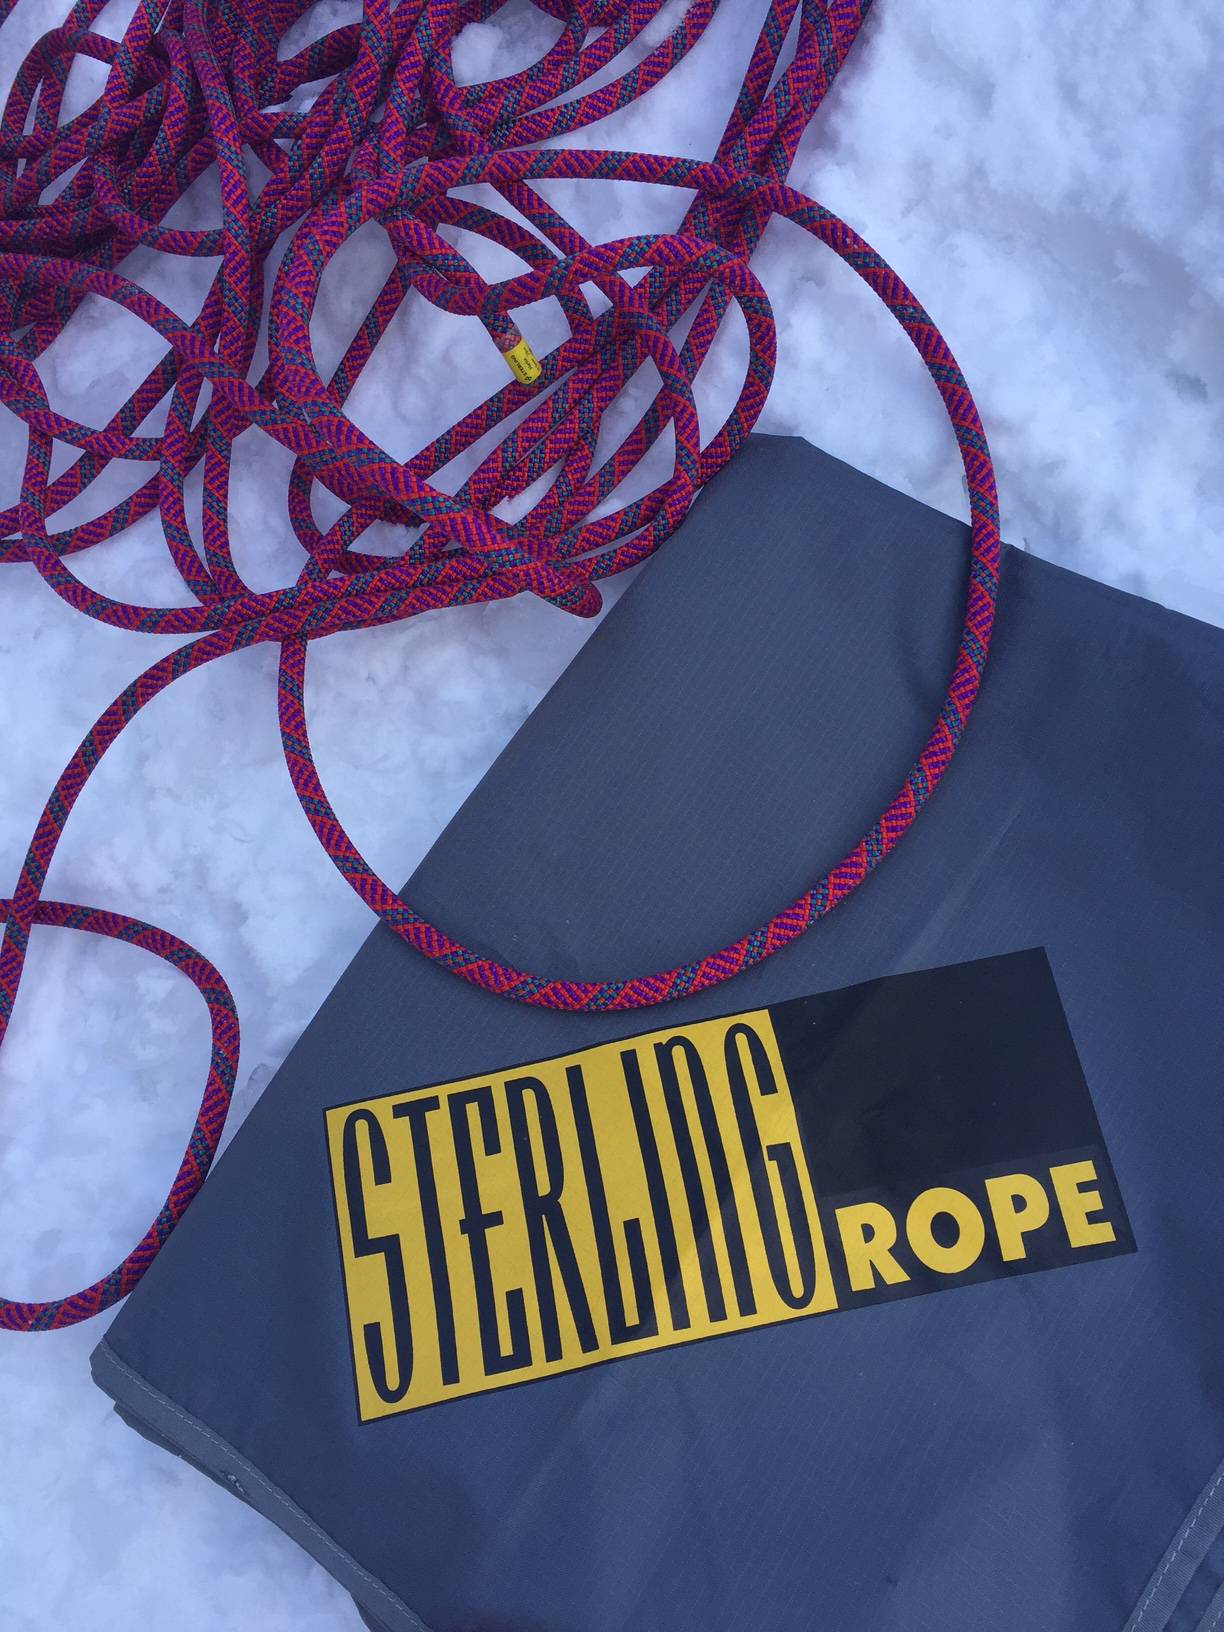 Sterling Rope Bag / Tarp